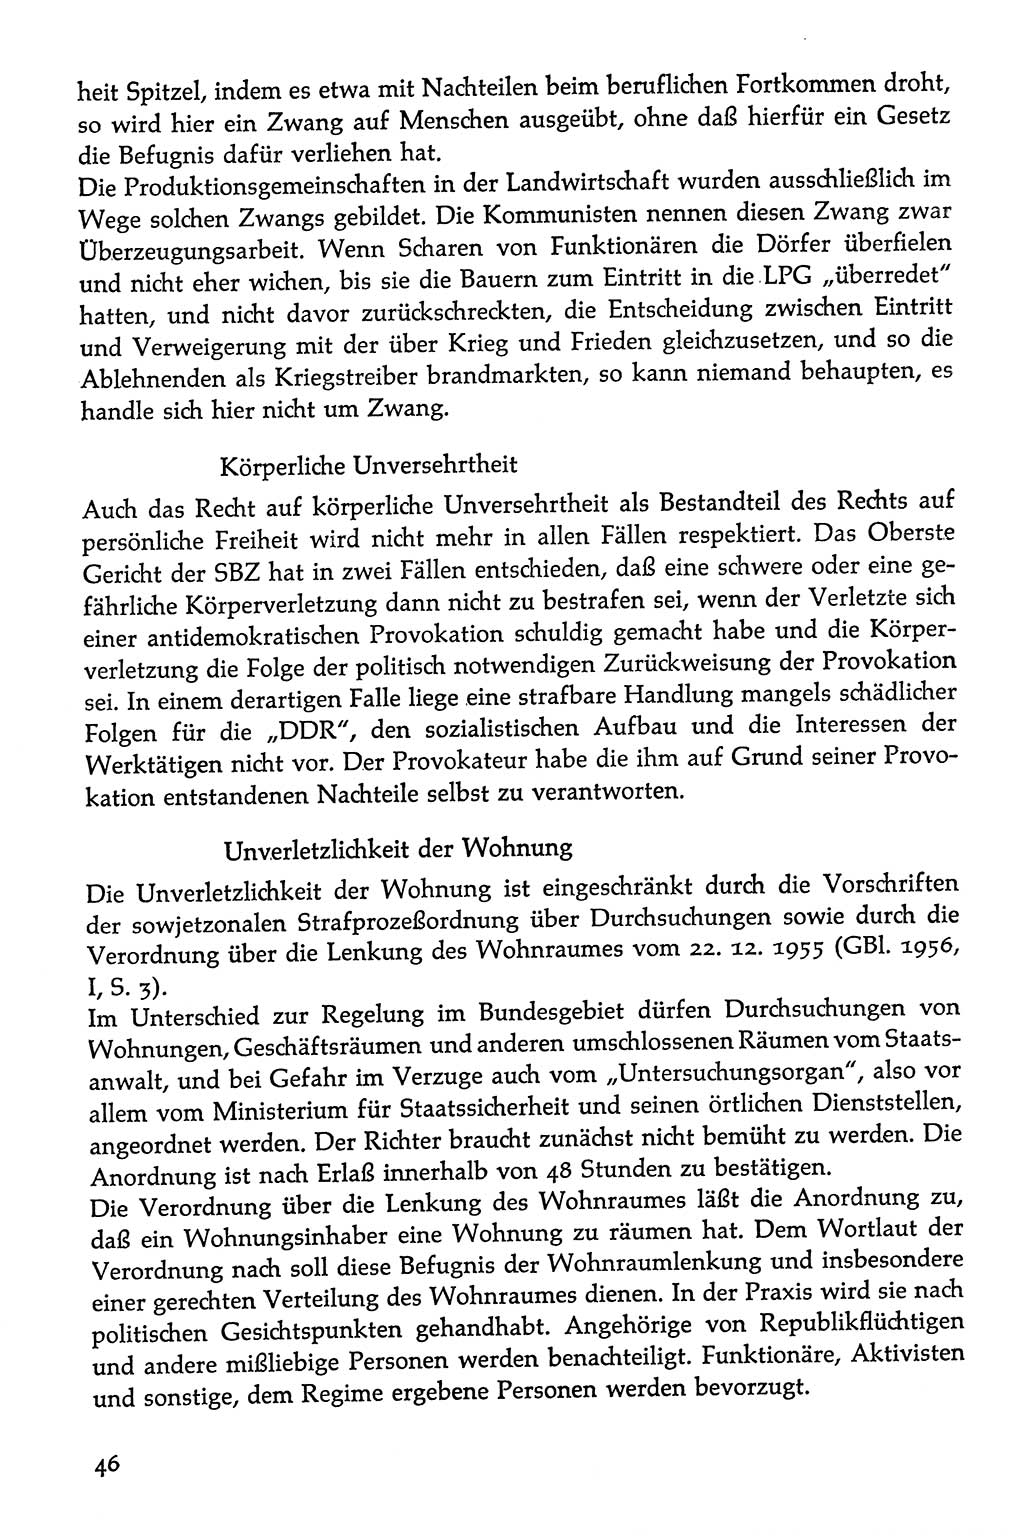 Volksdemokratische Ordnung in Mitteldeutschland [Deutsche Demokratische Republik (DDR)], Texte zur verfassungsrechtlichen Situation 1963, Seite 46 (Volksdem. Ordn. Md. DDR 1963, S. 46)